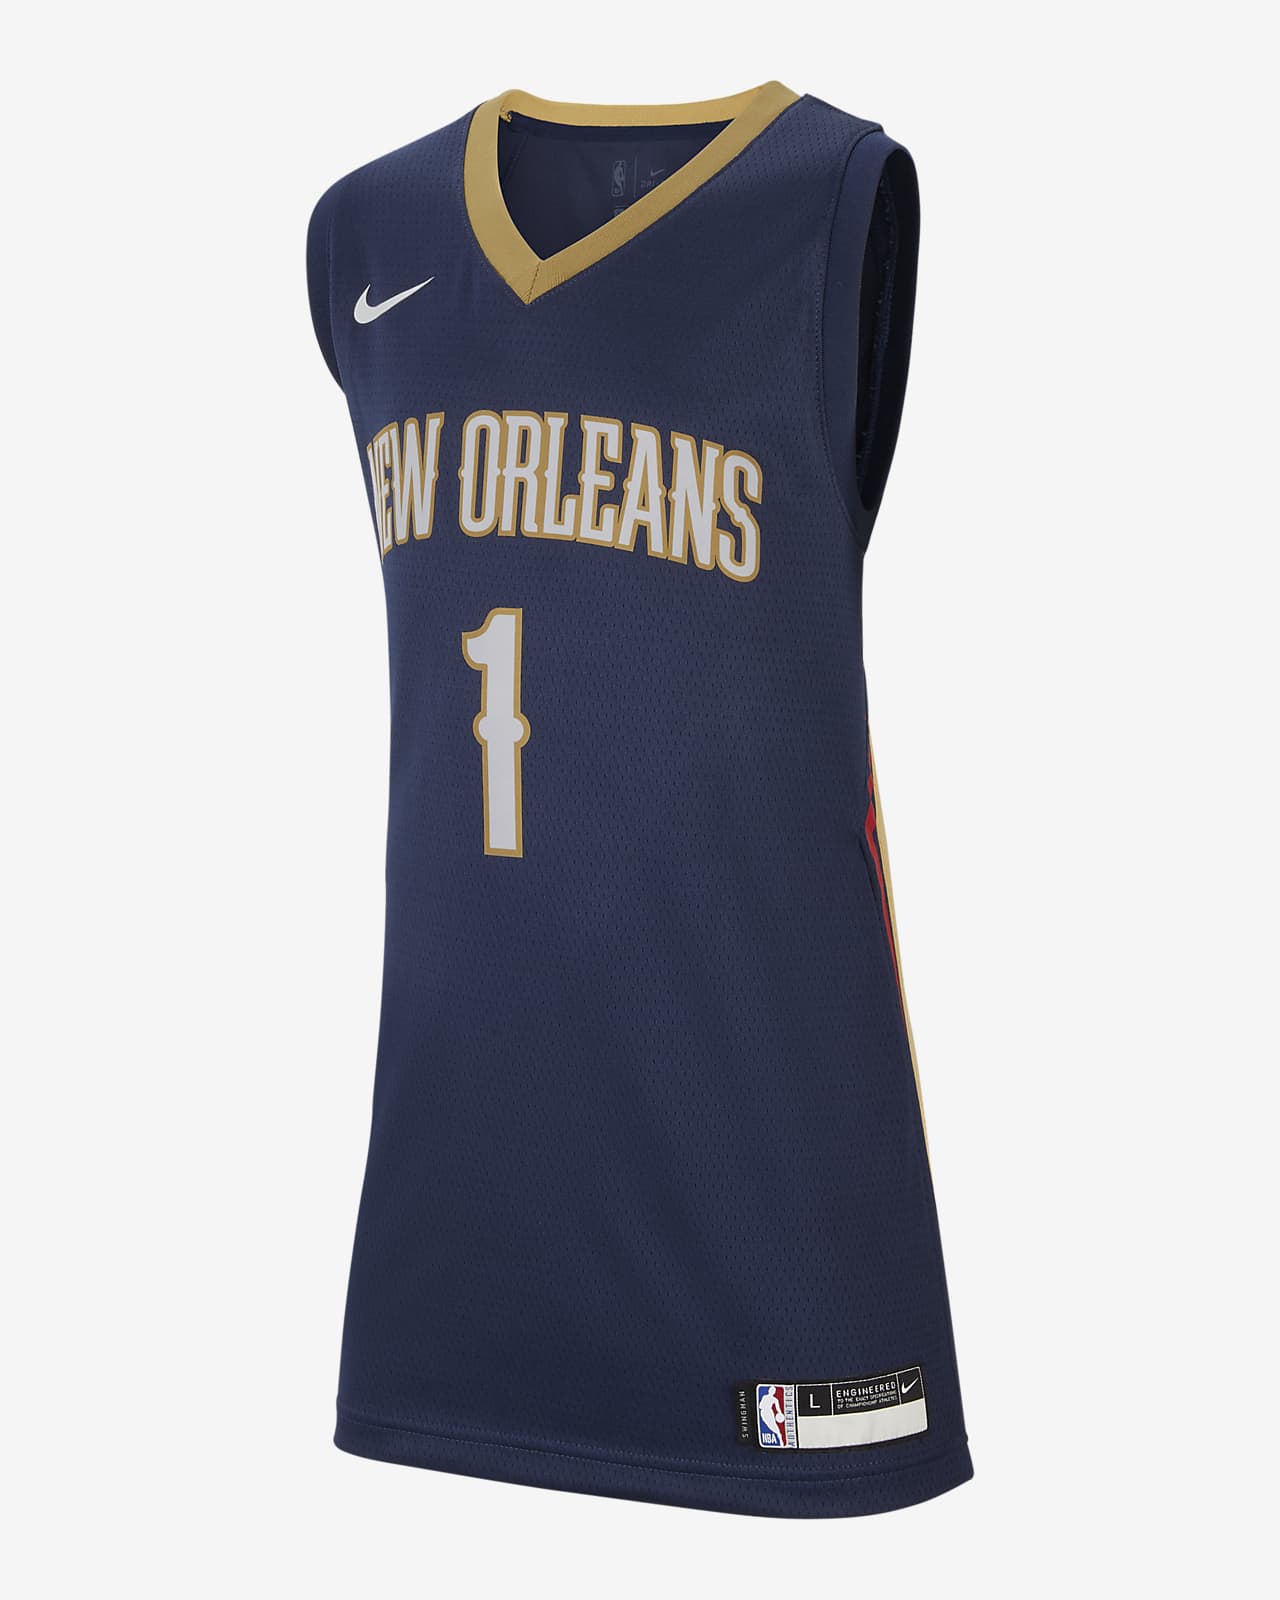 Pelicans Icon Edition Camiseta Nike de NBA - Niño/a. Nike ES